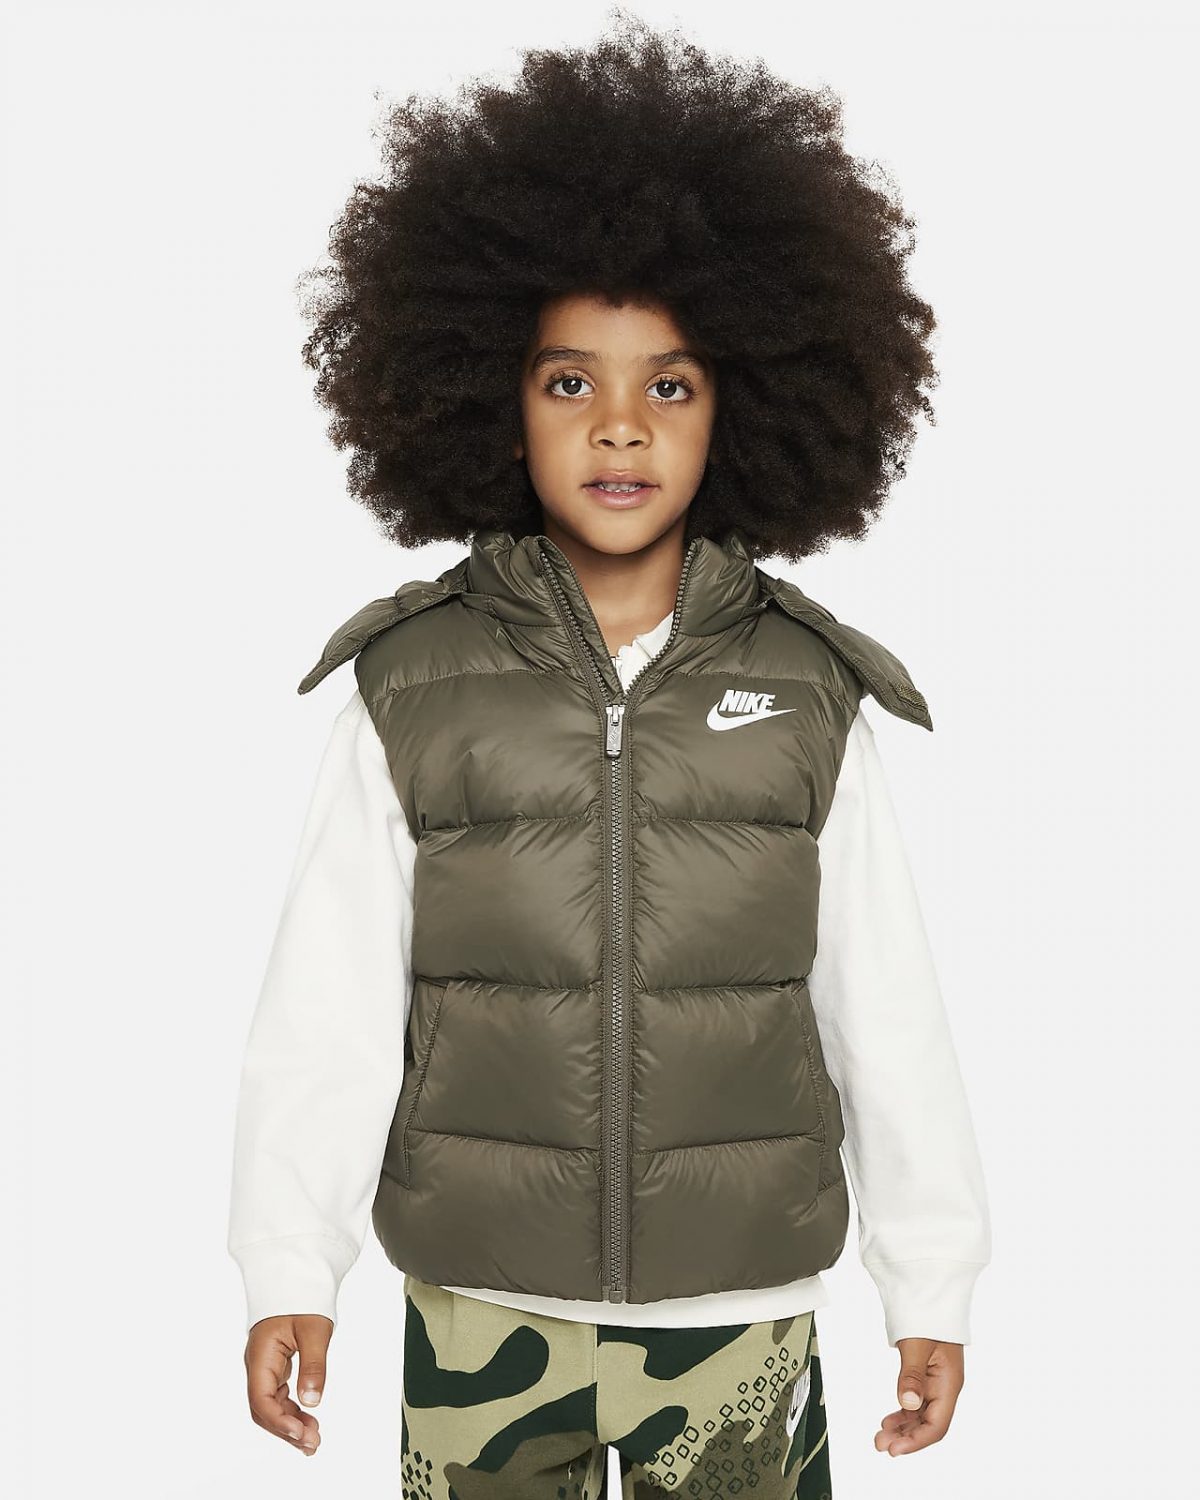 Детская спортивная одежда Nike фото